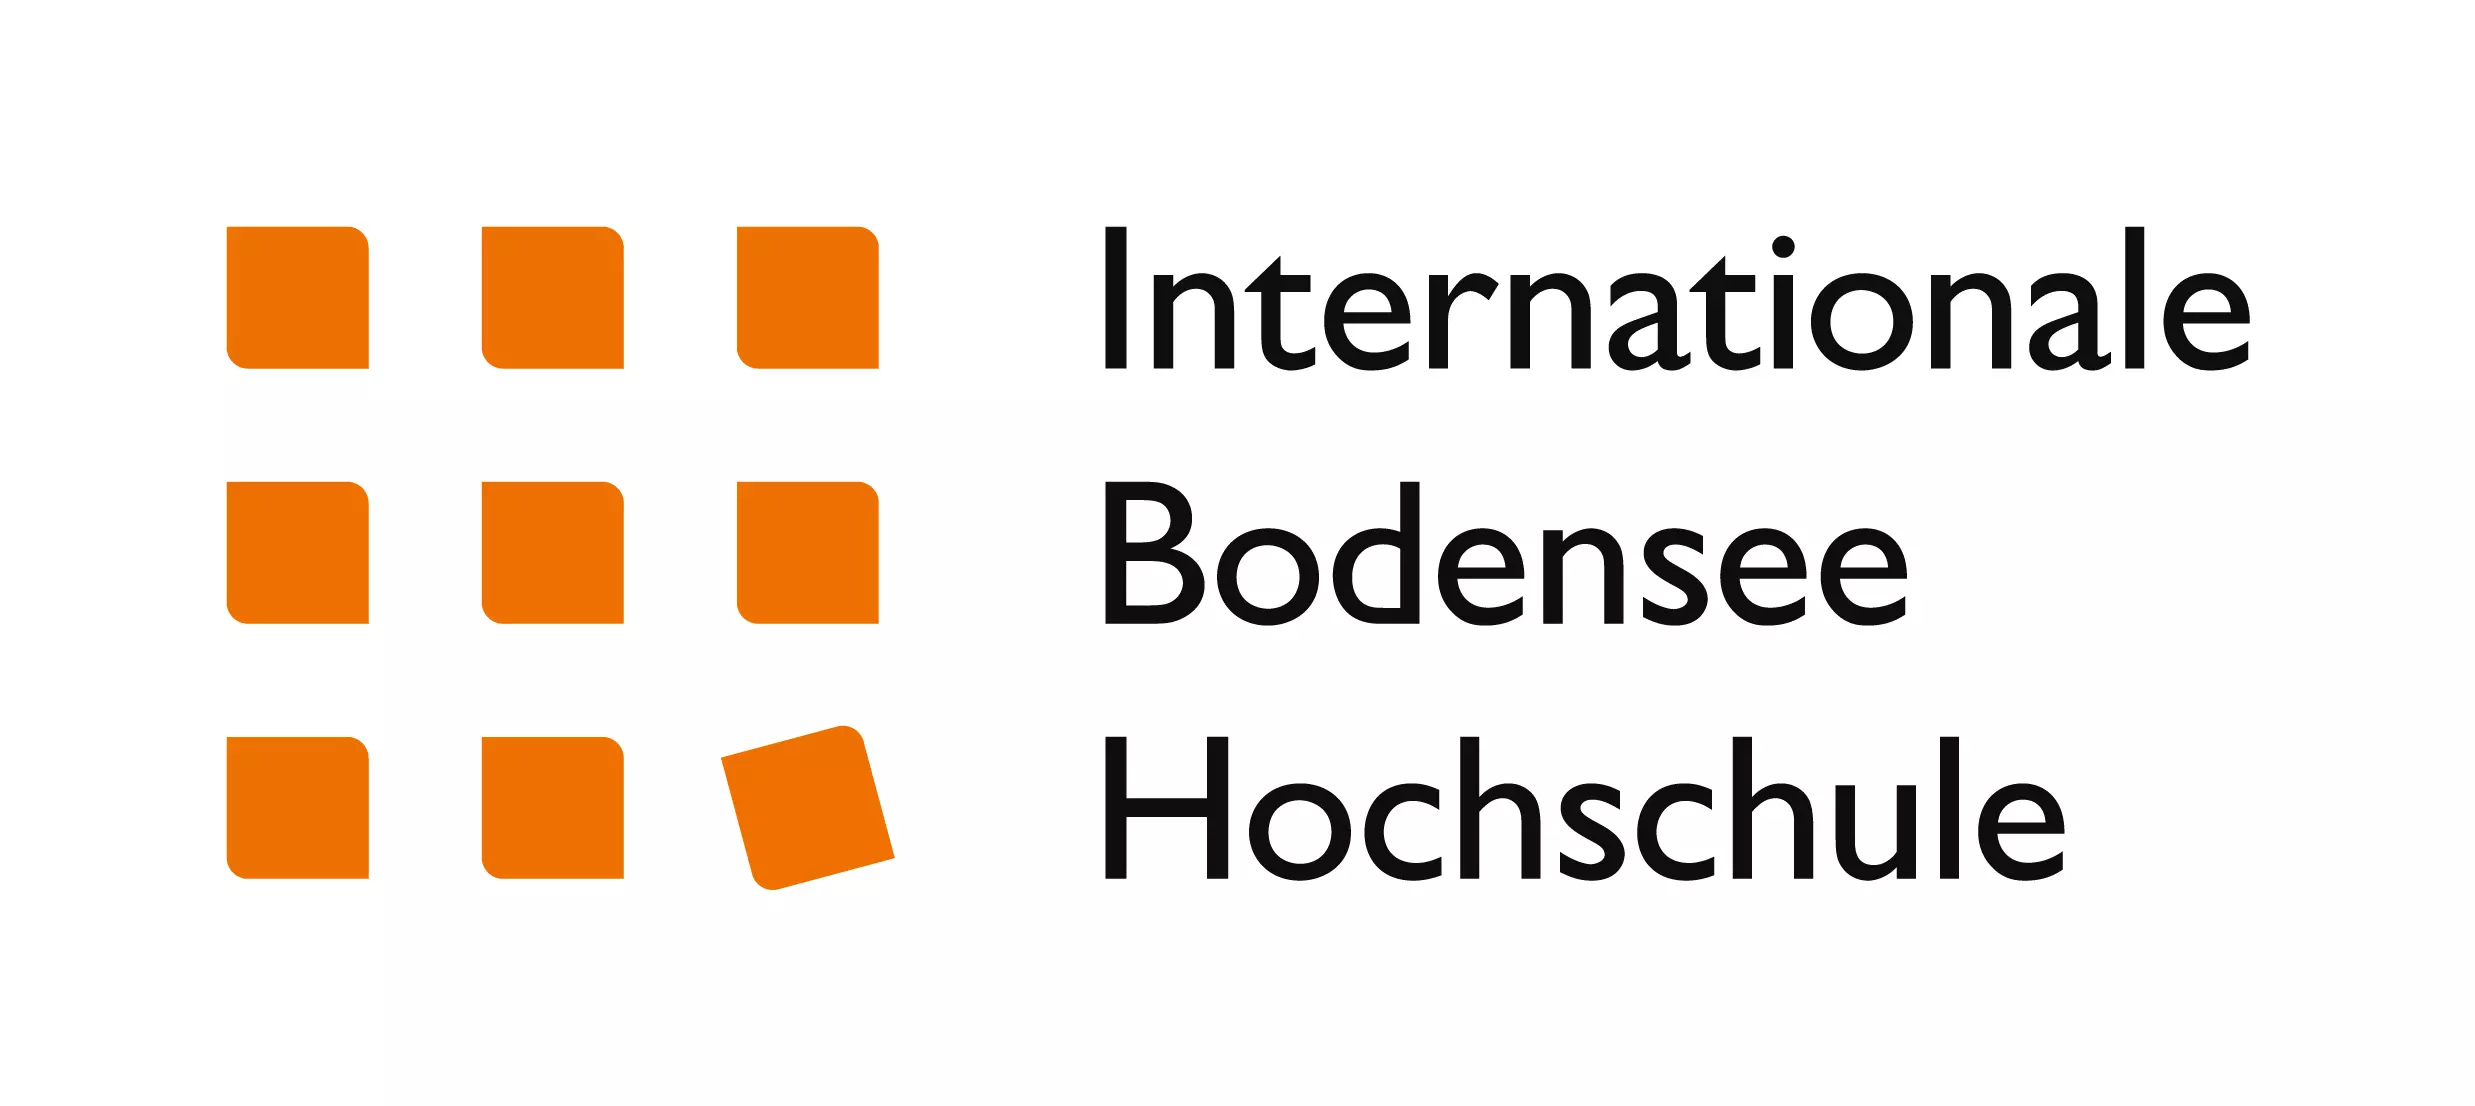 Internationale Bodensee Hochschule